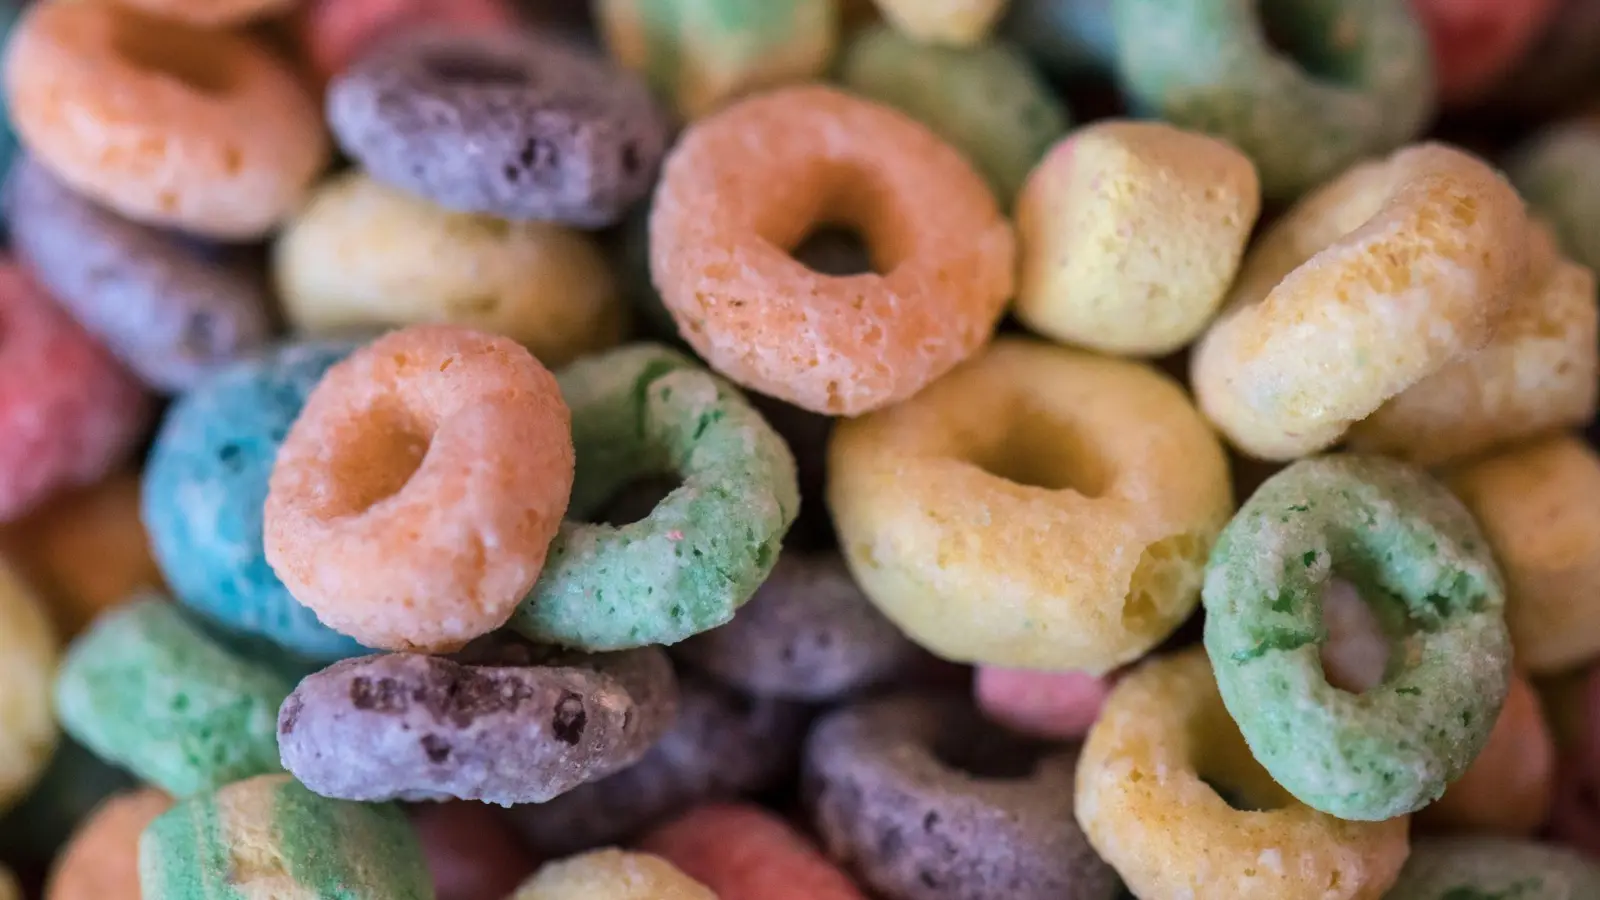 Schön bunt, aber auch reich an Zucker: Die meisten Kinder-Cerealien übersteigen die WHO-Richtwerte von 12,5 g auf 100 g. (Foto: Boris Roessler/dpa/dpa-tmn)